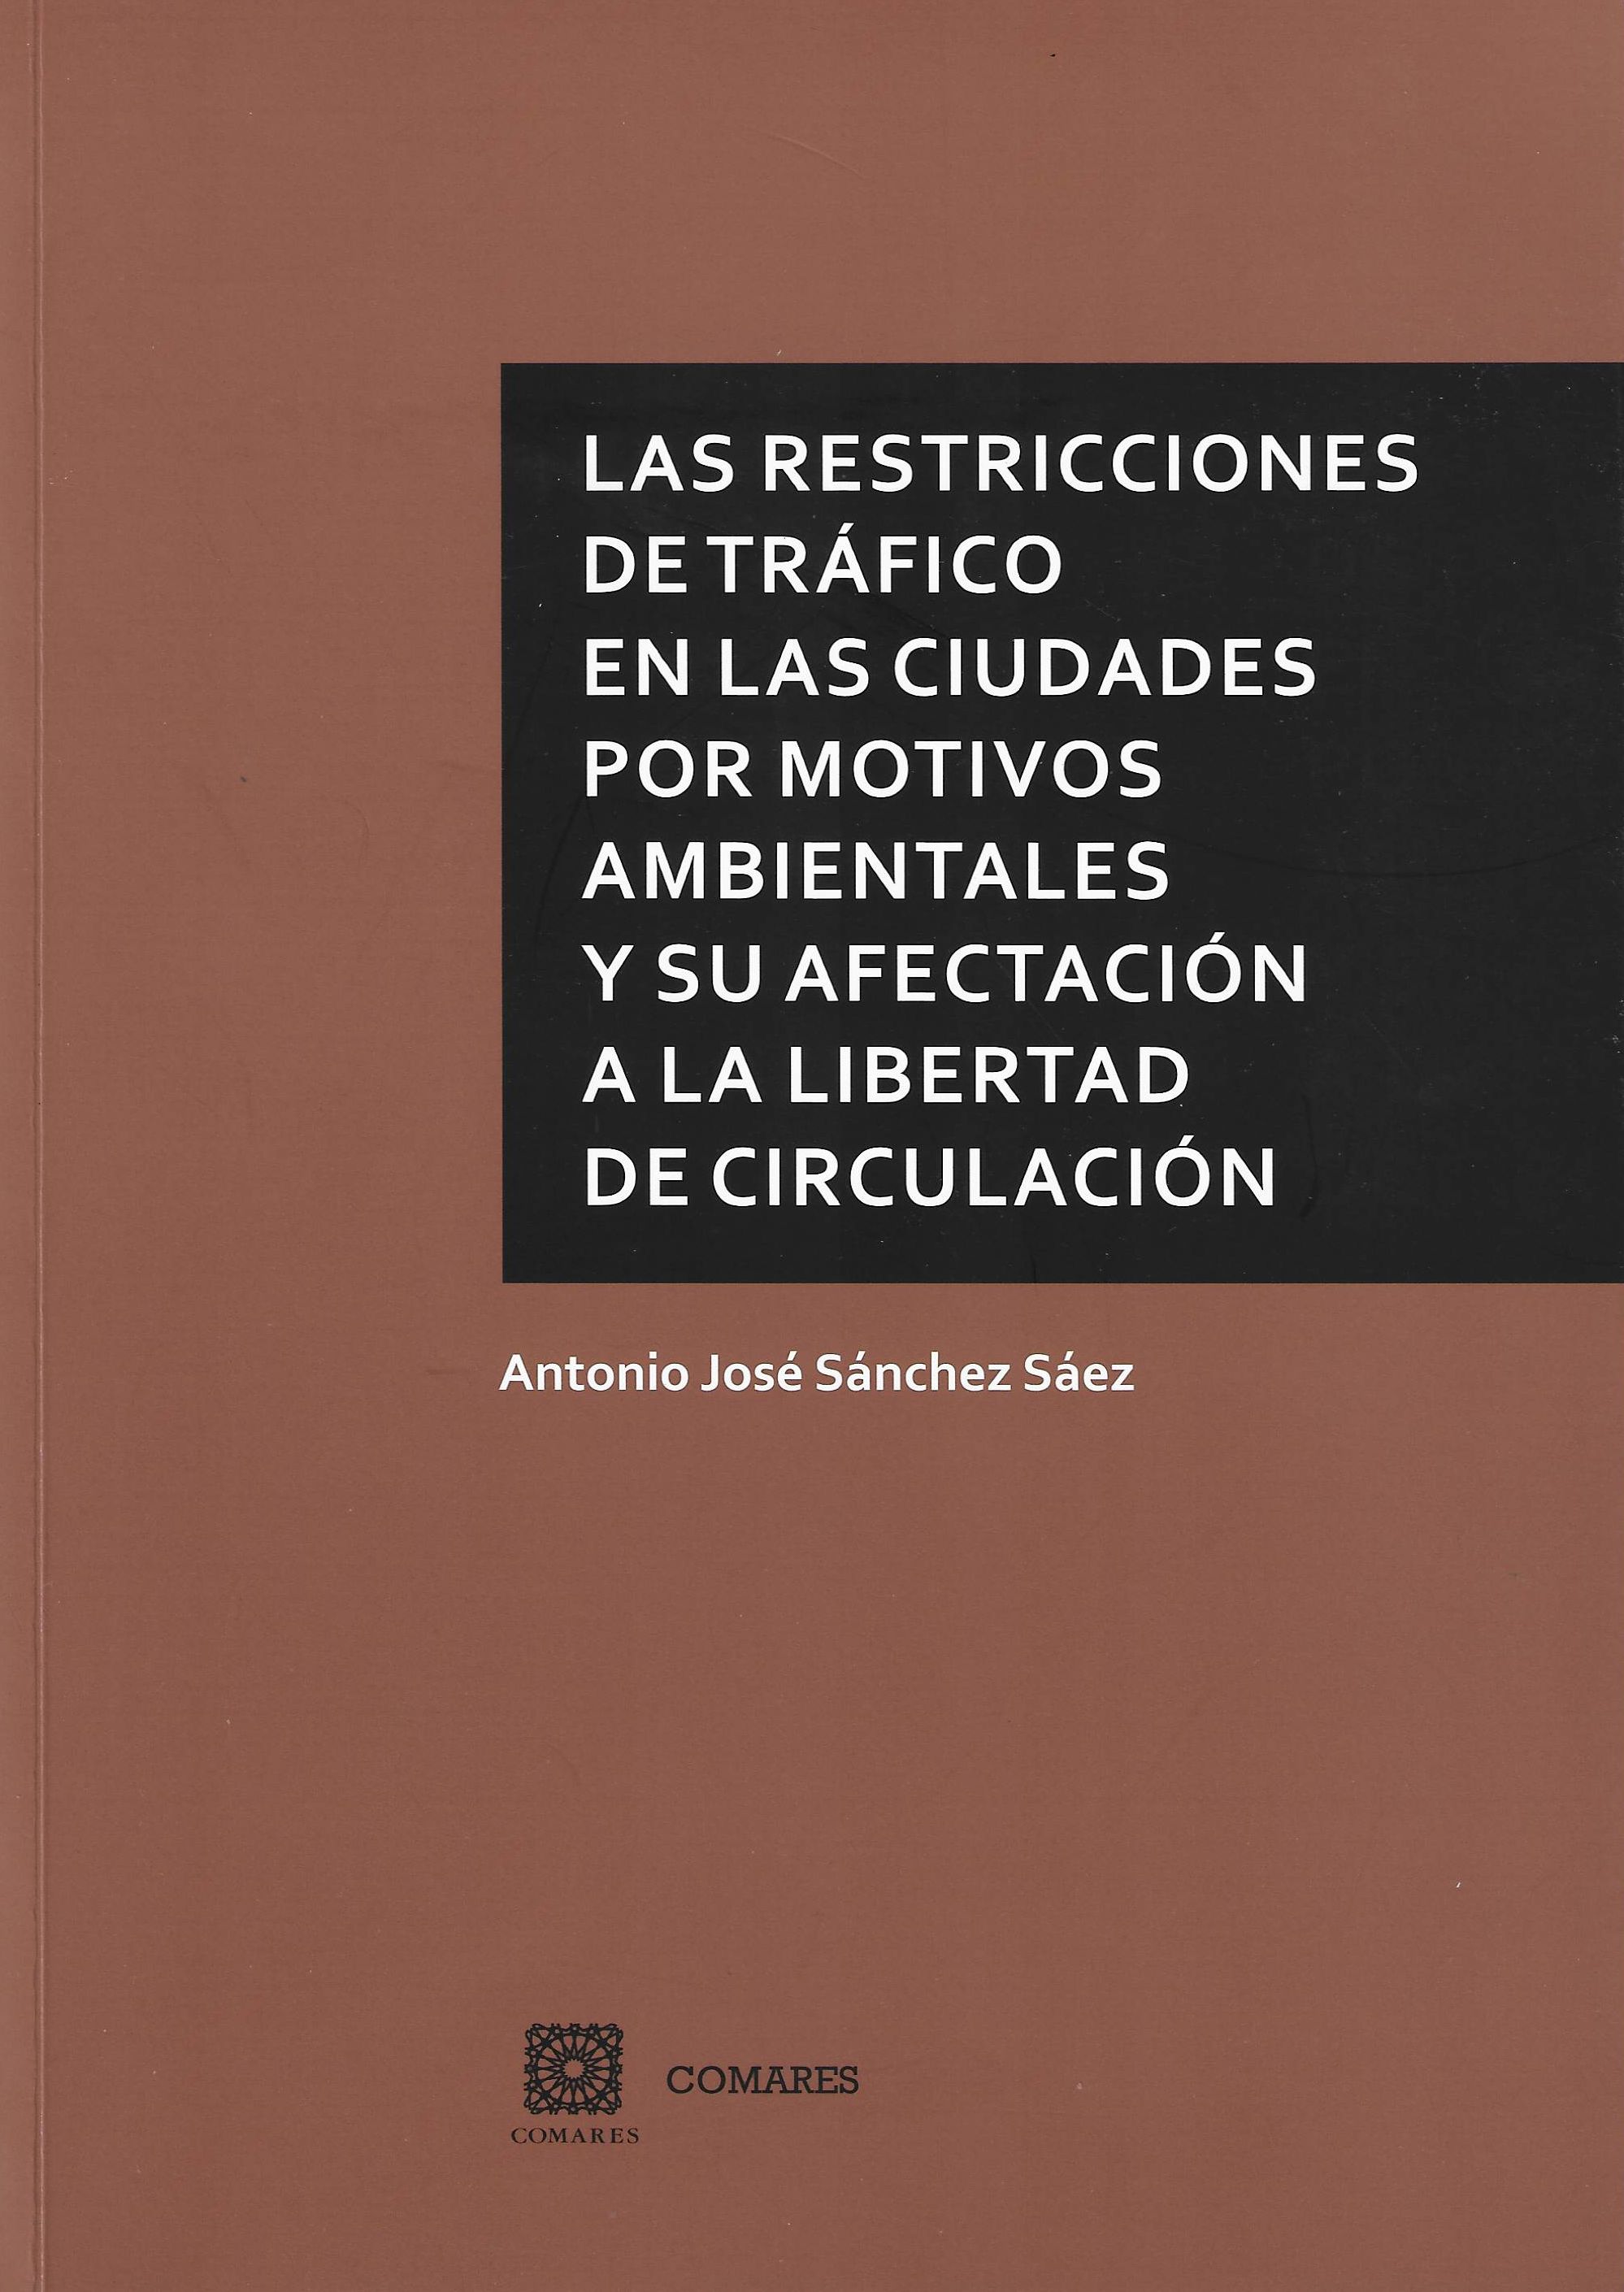 Imagen de portada del libro Las restricciones de tráfico en las ciudades por motivos ambientales y su afectación a la libertad de circulación